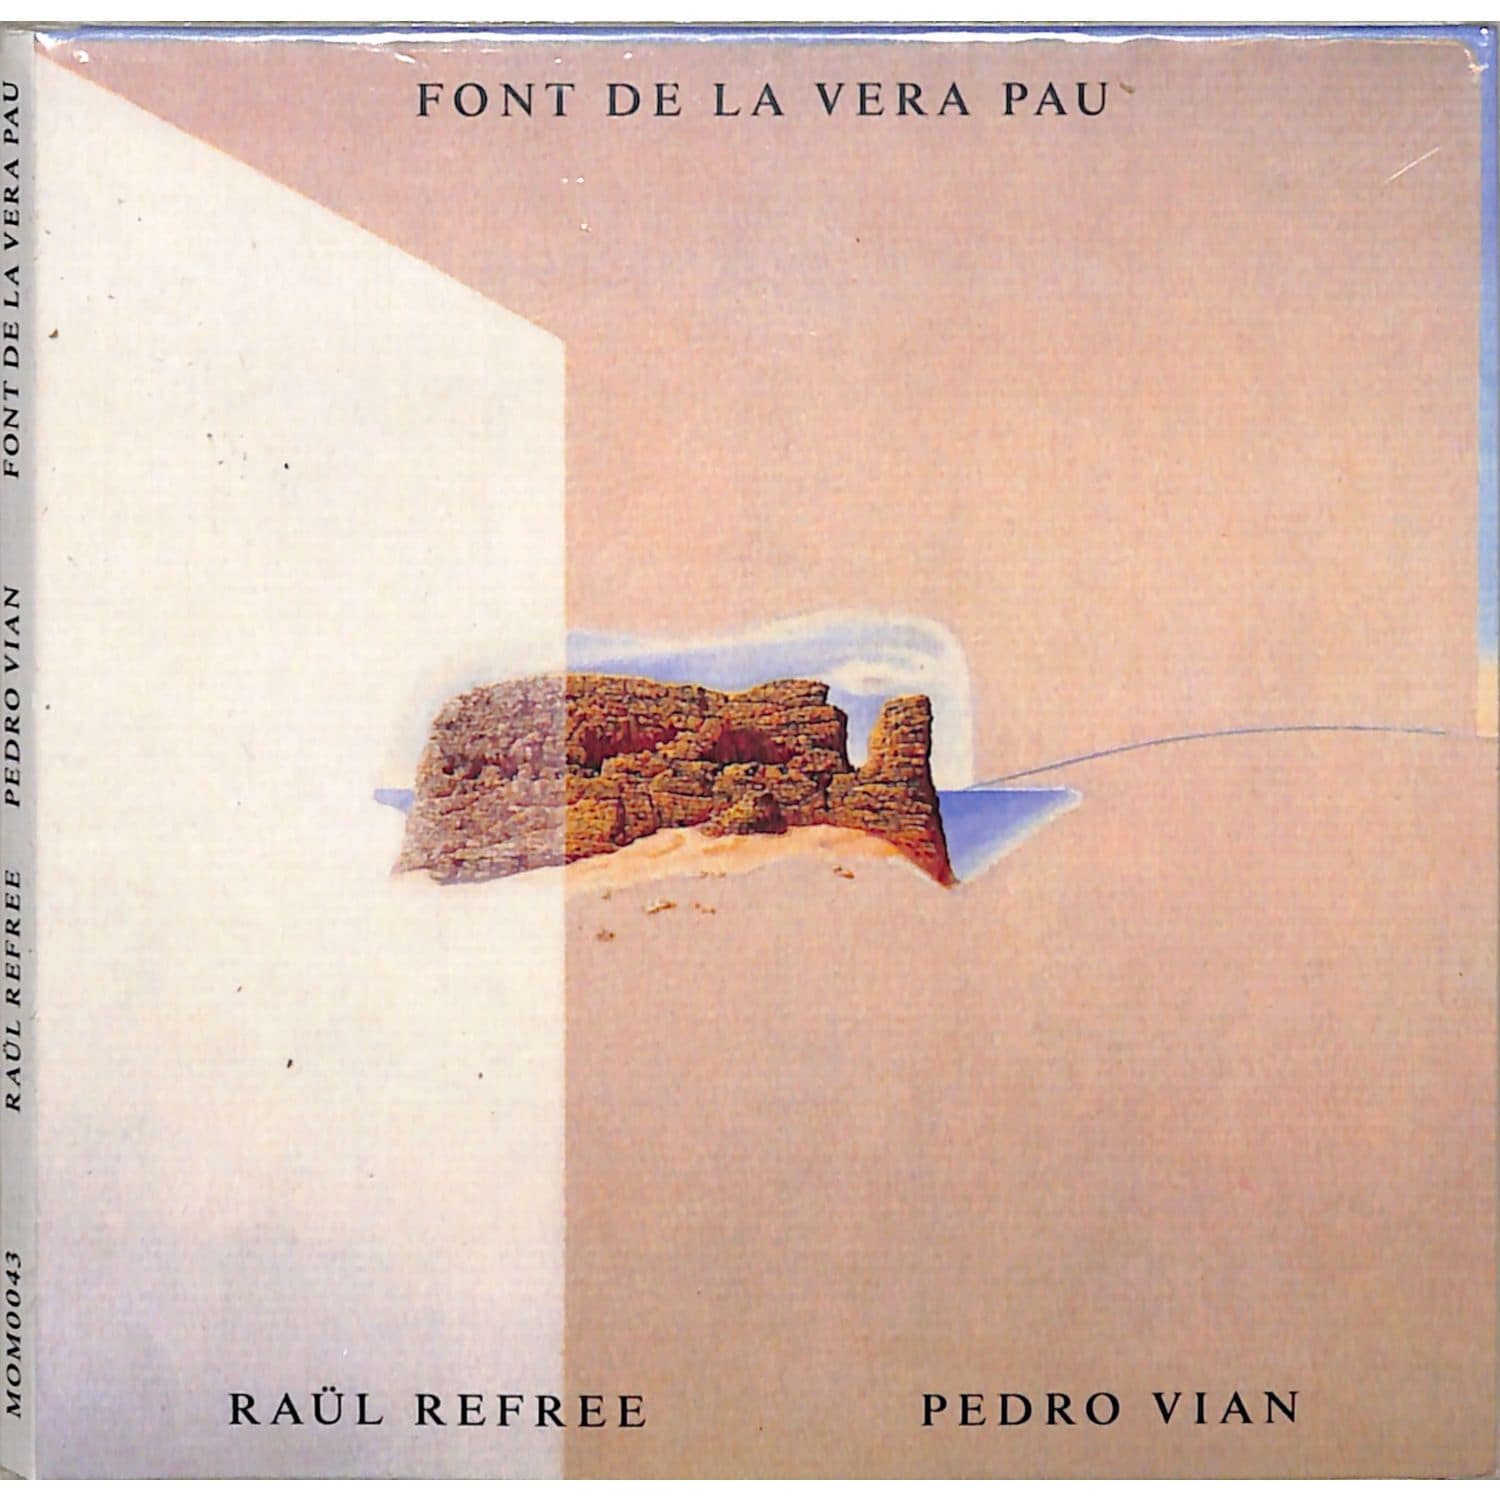 Raul Refree & Pedro Vian - FONT DE LA VERA PAU 